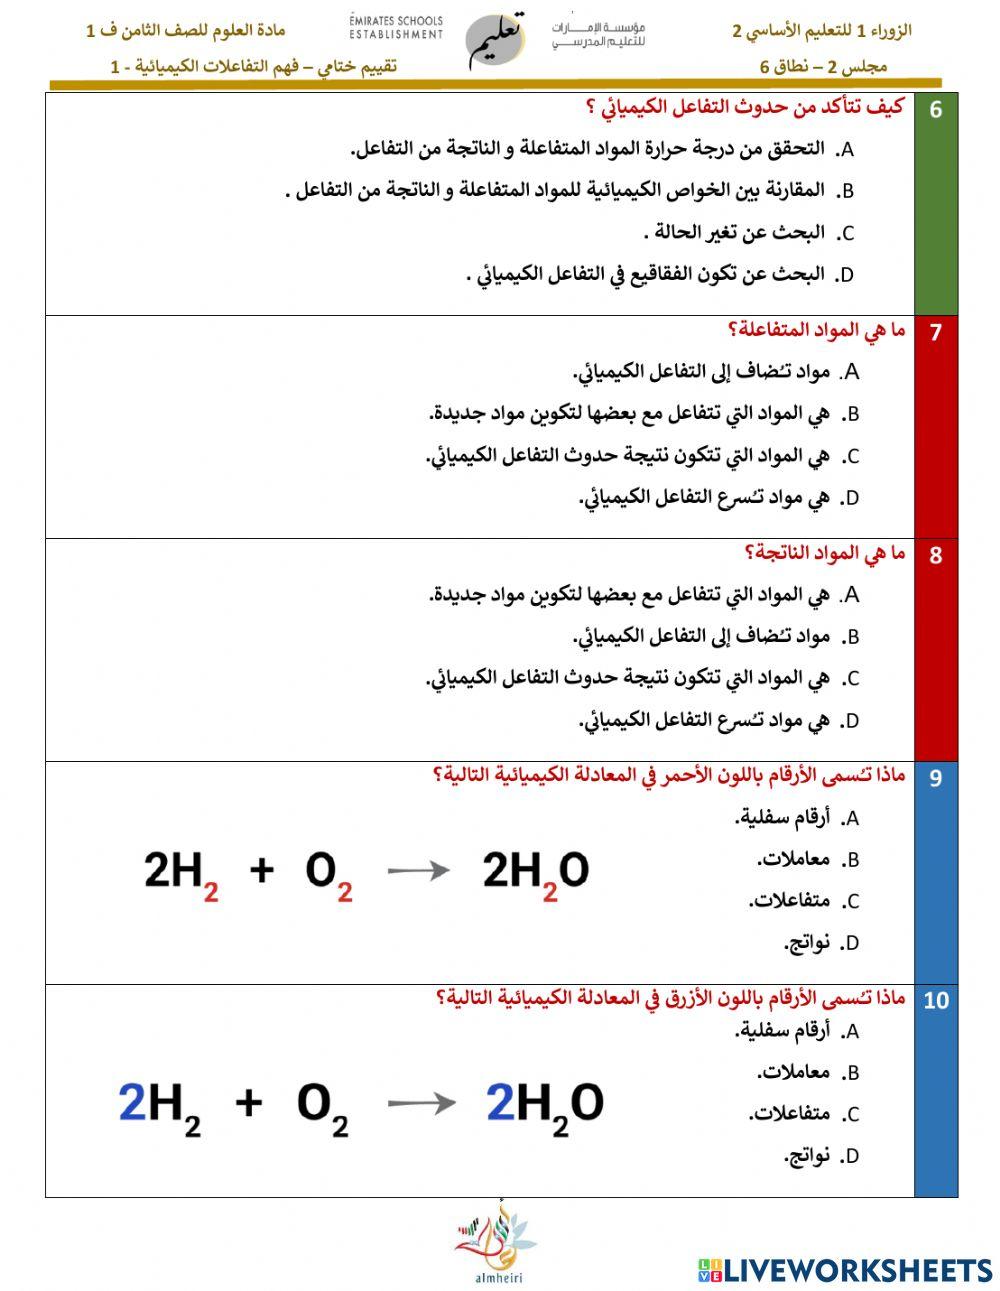 فهم التفاعلات الكيميائية 1